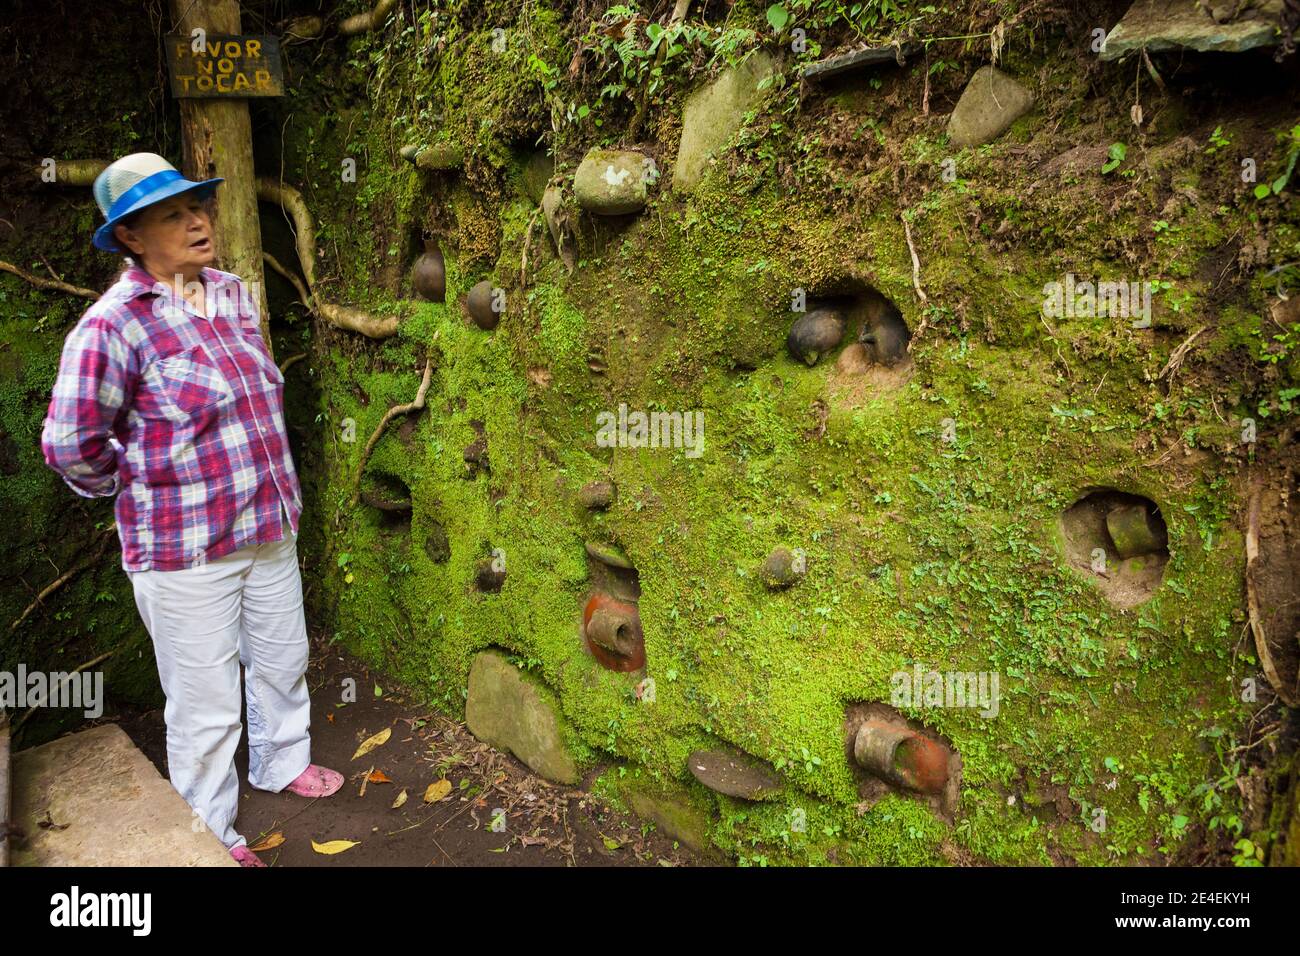 Antichi reperti archeologici in uno scavo nel luogo archeologico e storico Sitio Barriles, provincia di Chiriqui, Repubublic di Panama. Foto Stock